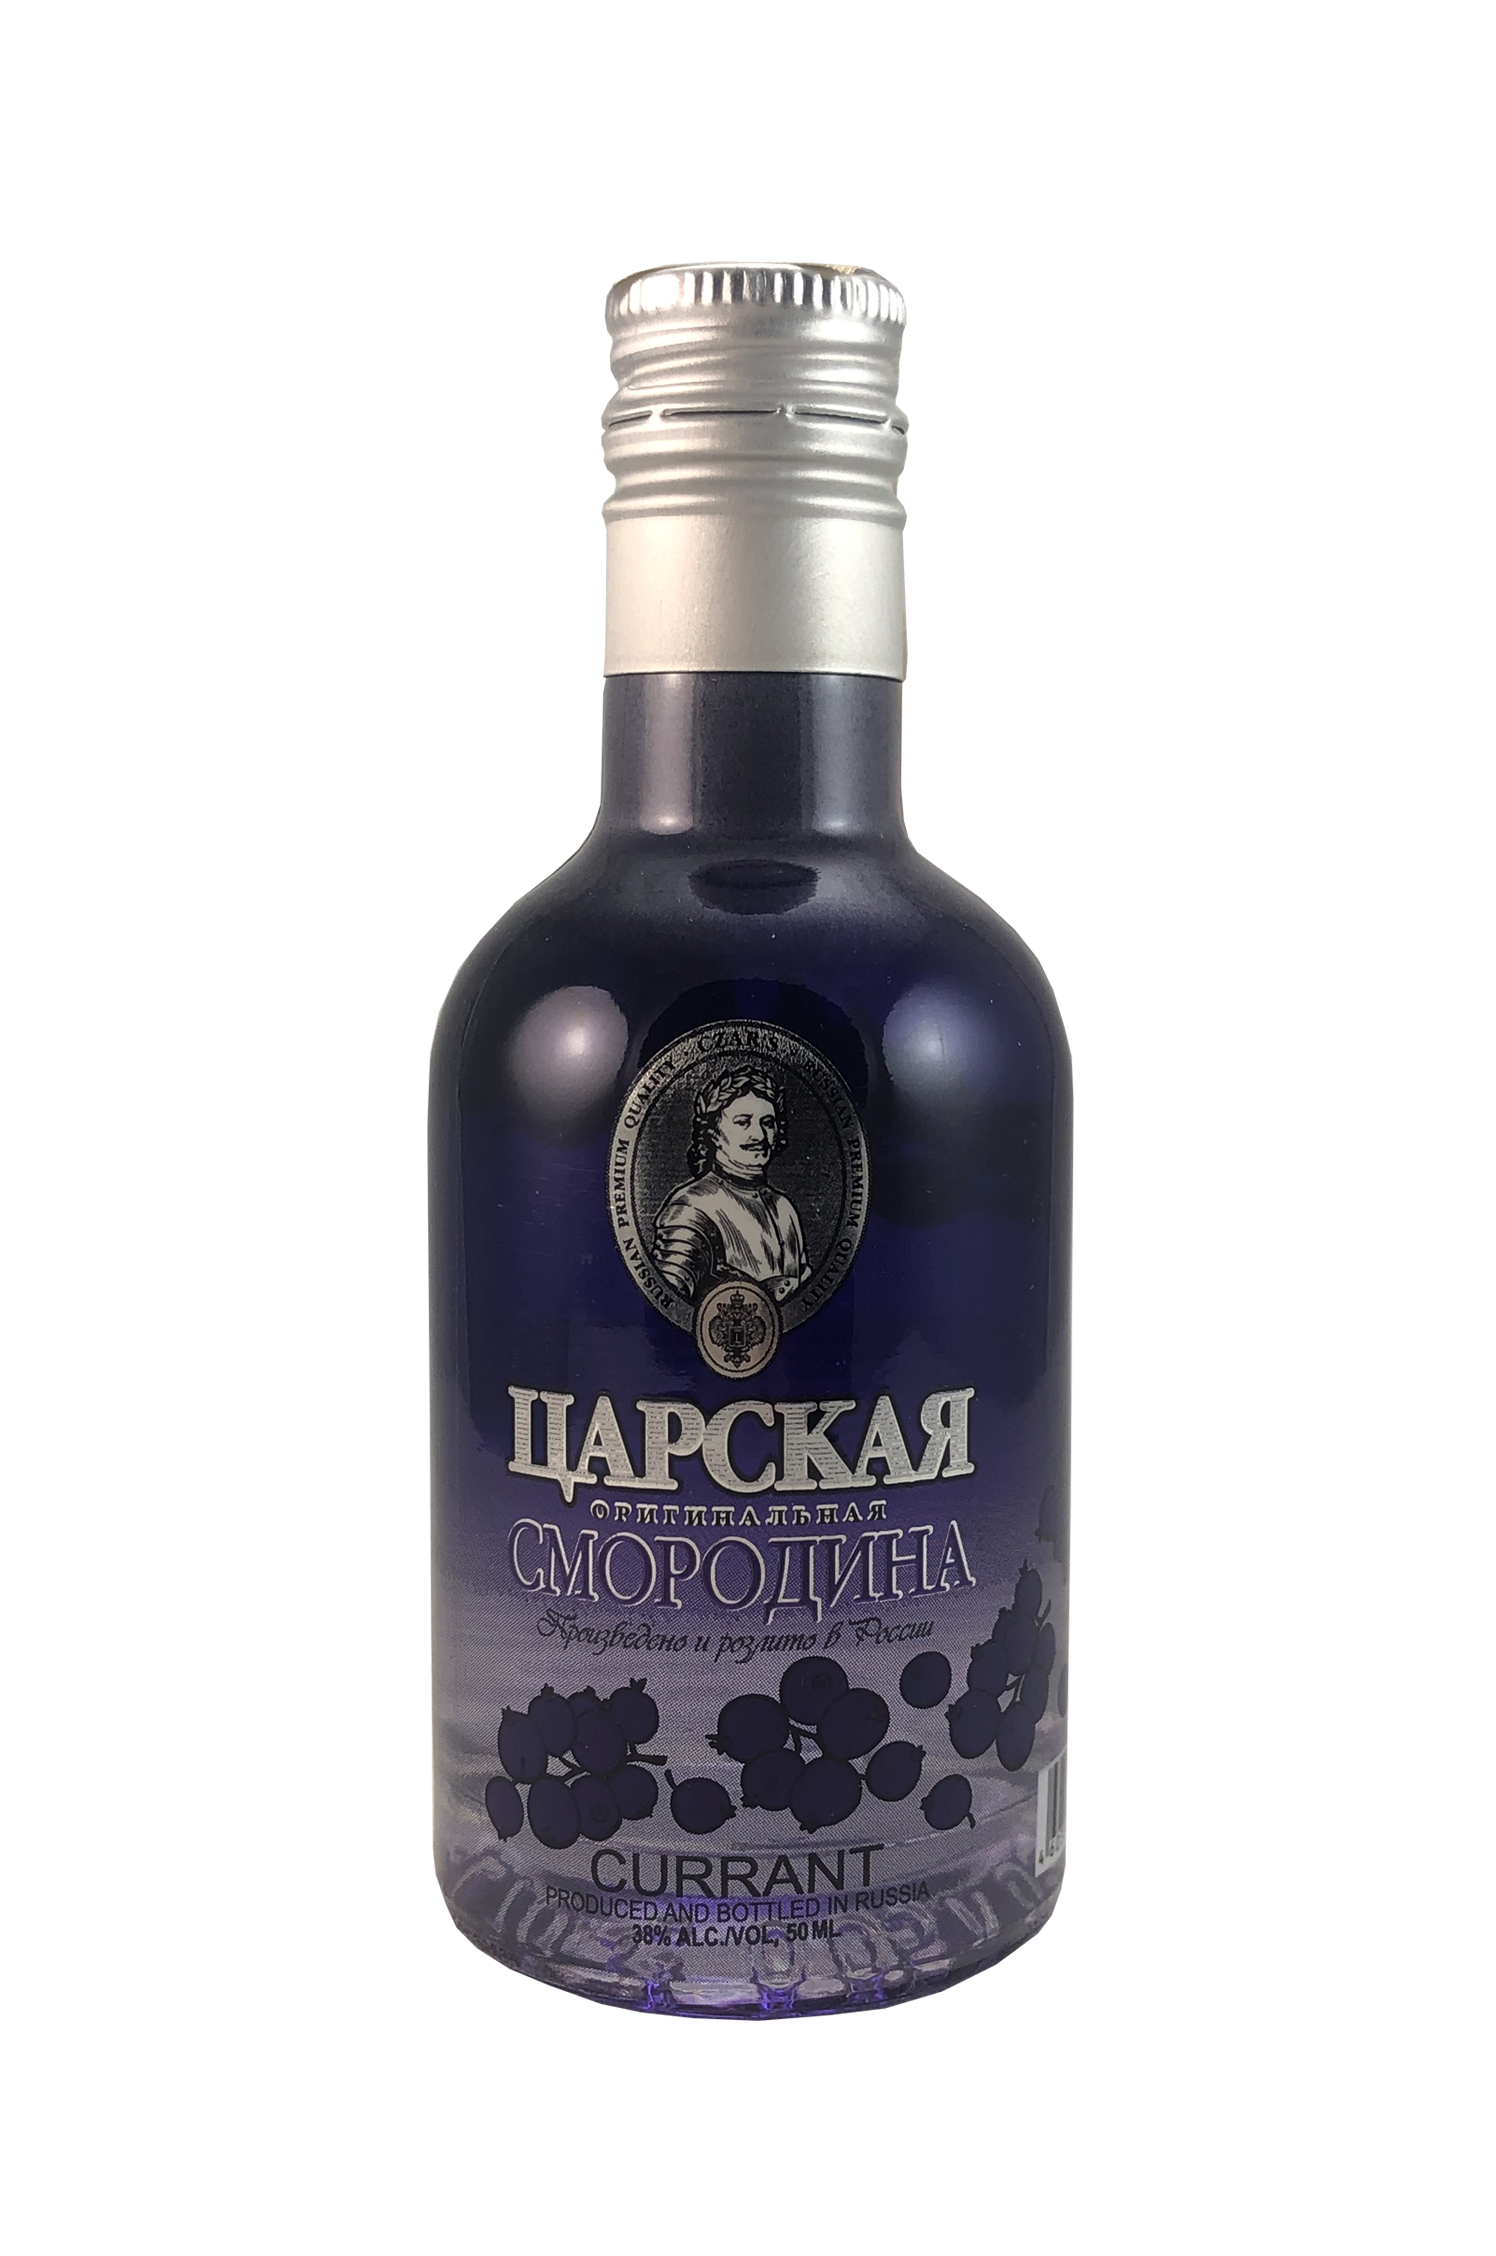 Cárska Originálna Vodka Currant